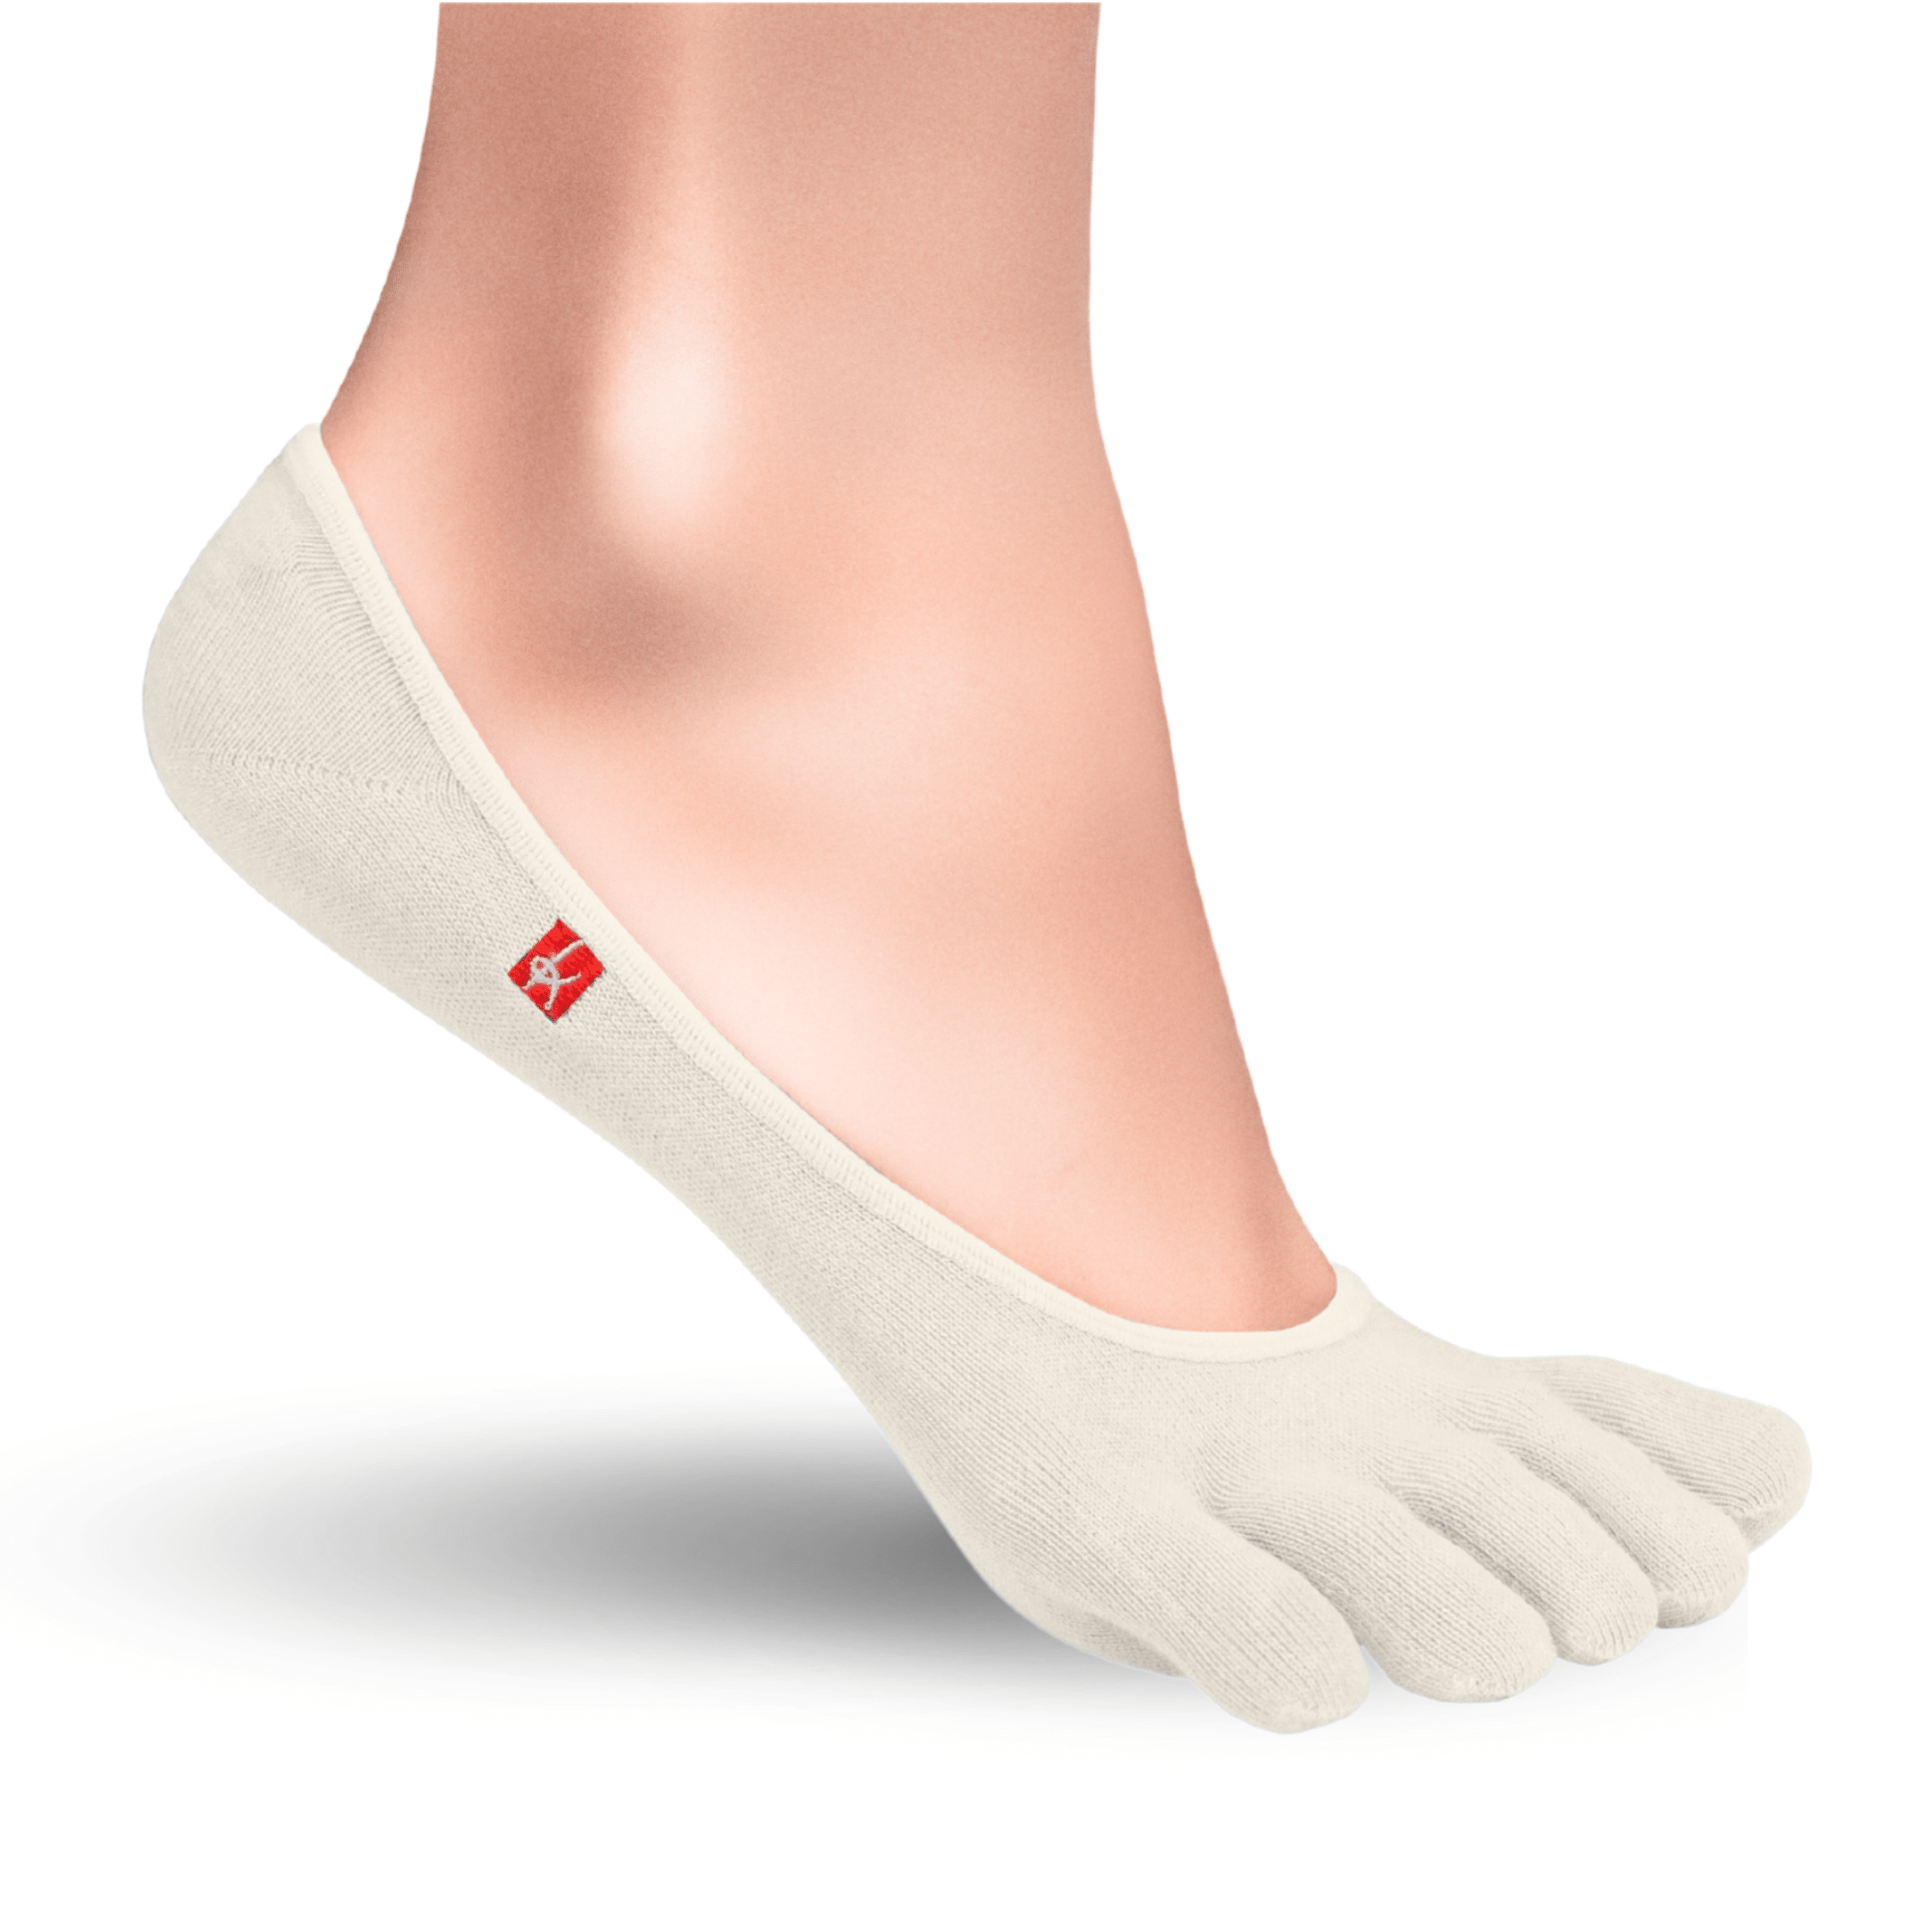 Knitido Zero Coolmax toe socks ladies toe socks in sand